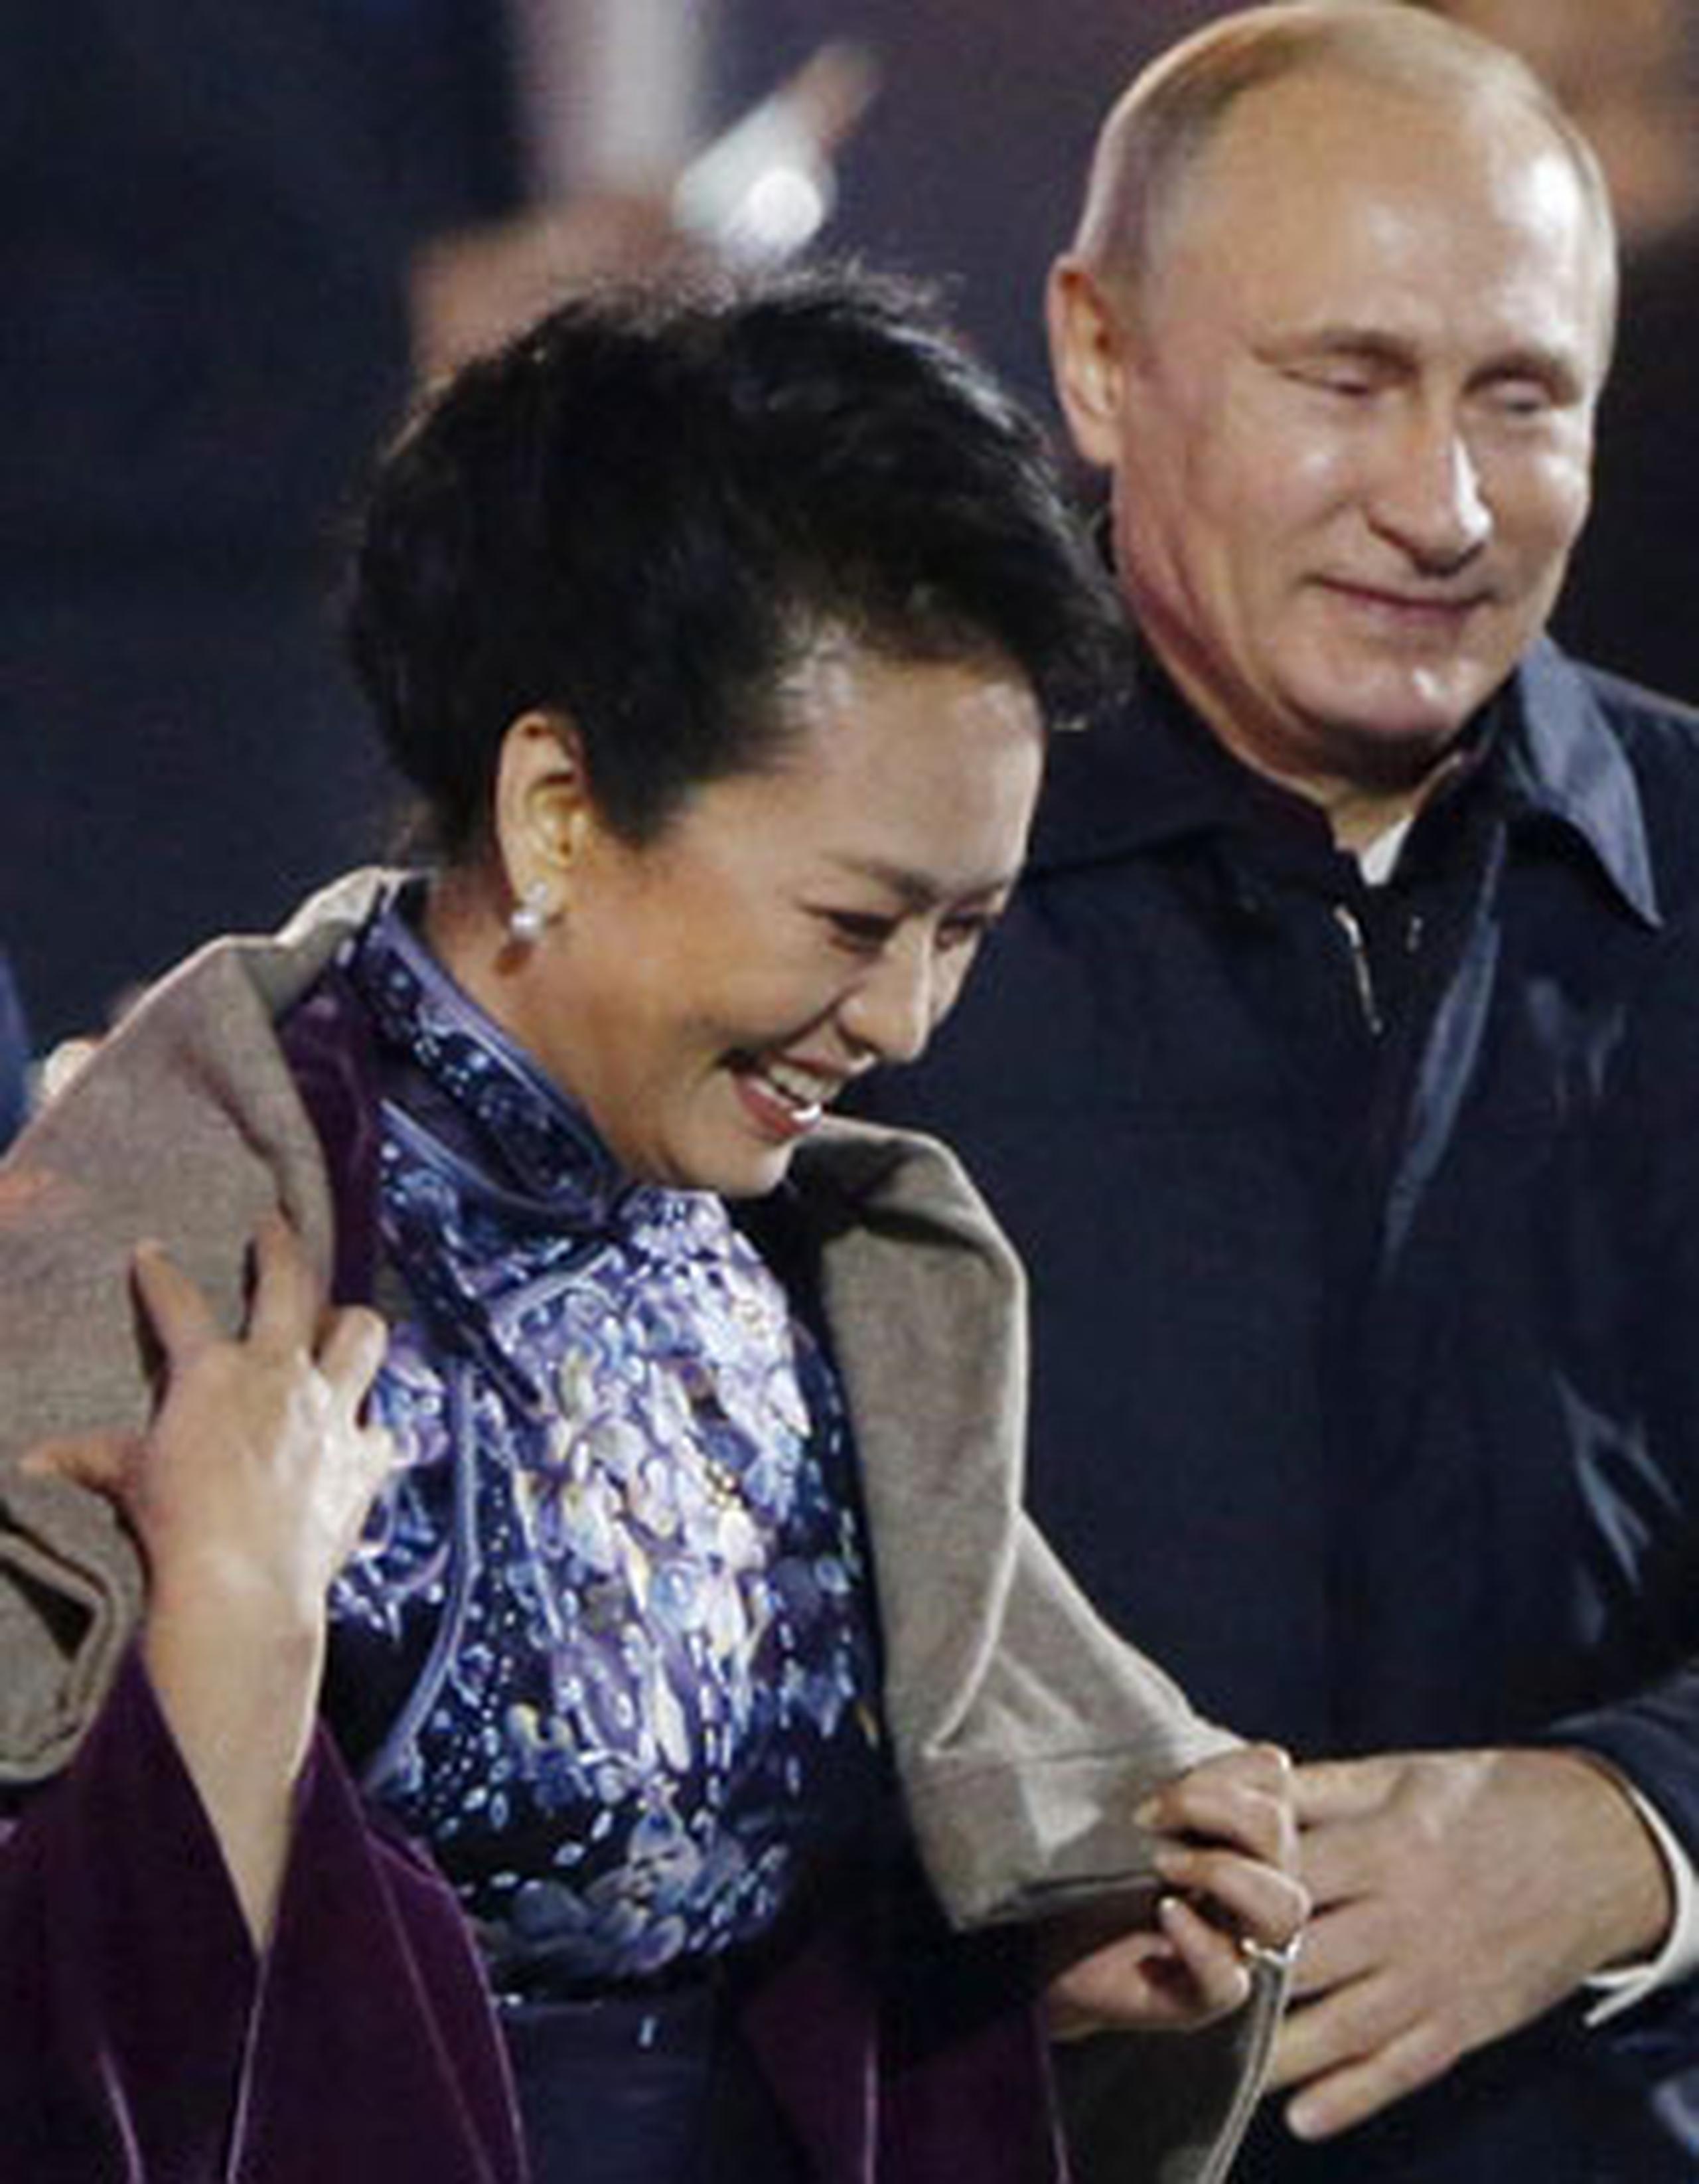 Mientras un distraído Xi Jinping charla animado con Barack Obama, Vladimir Putin reaccionó rápidamente al frío de la esposa del líder asiático, y cubrió con delicadeza los hombros de la dama. (AP)